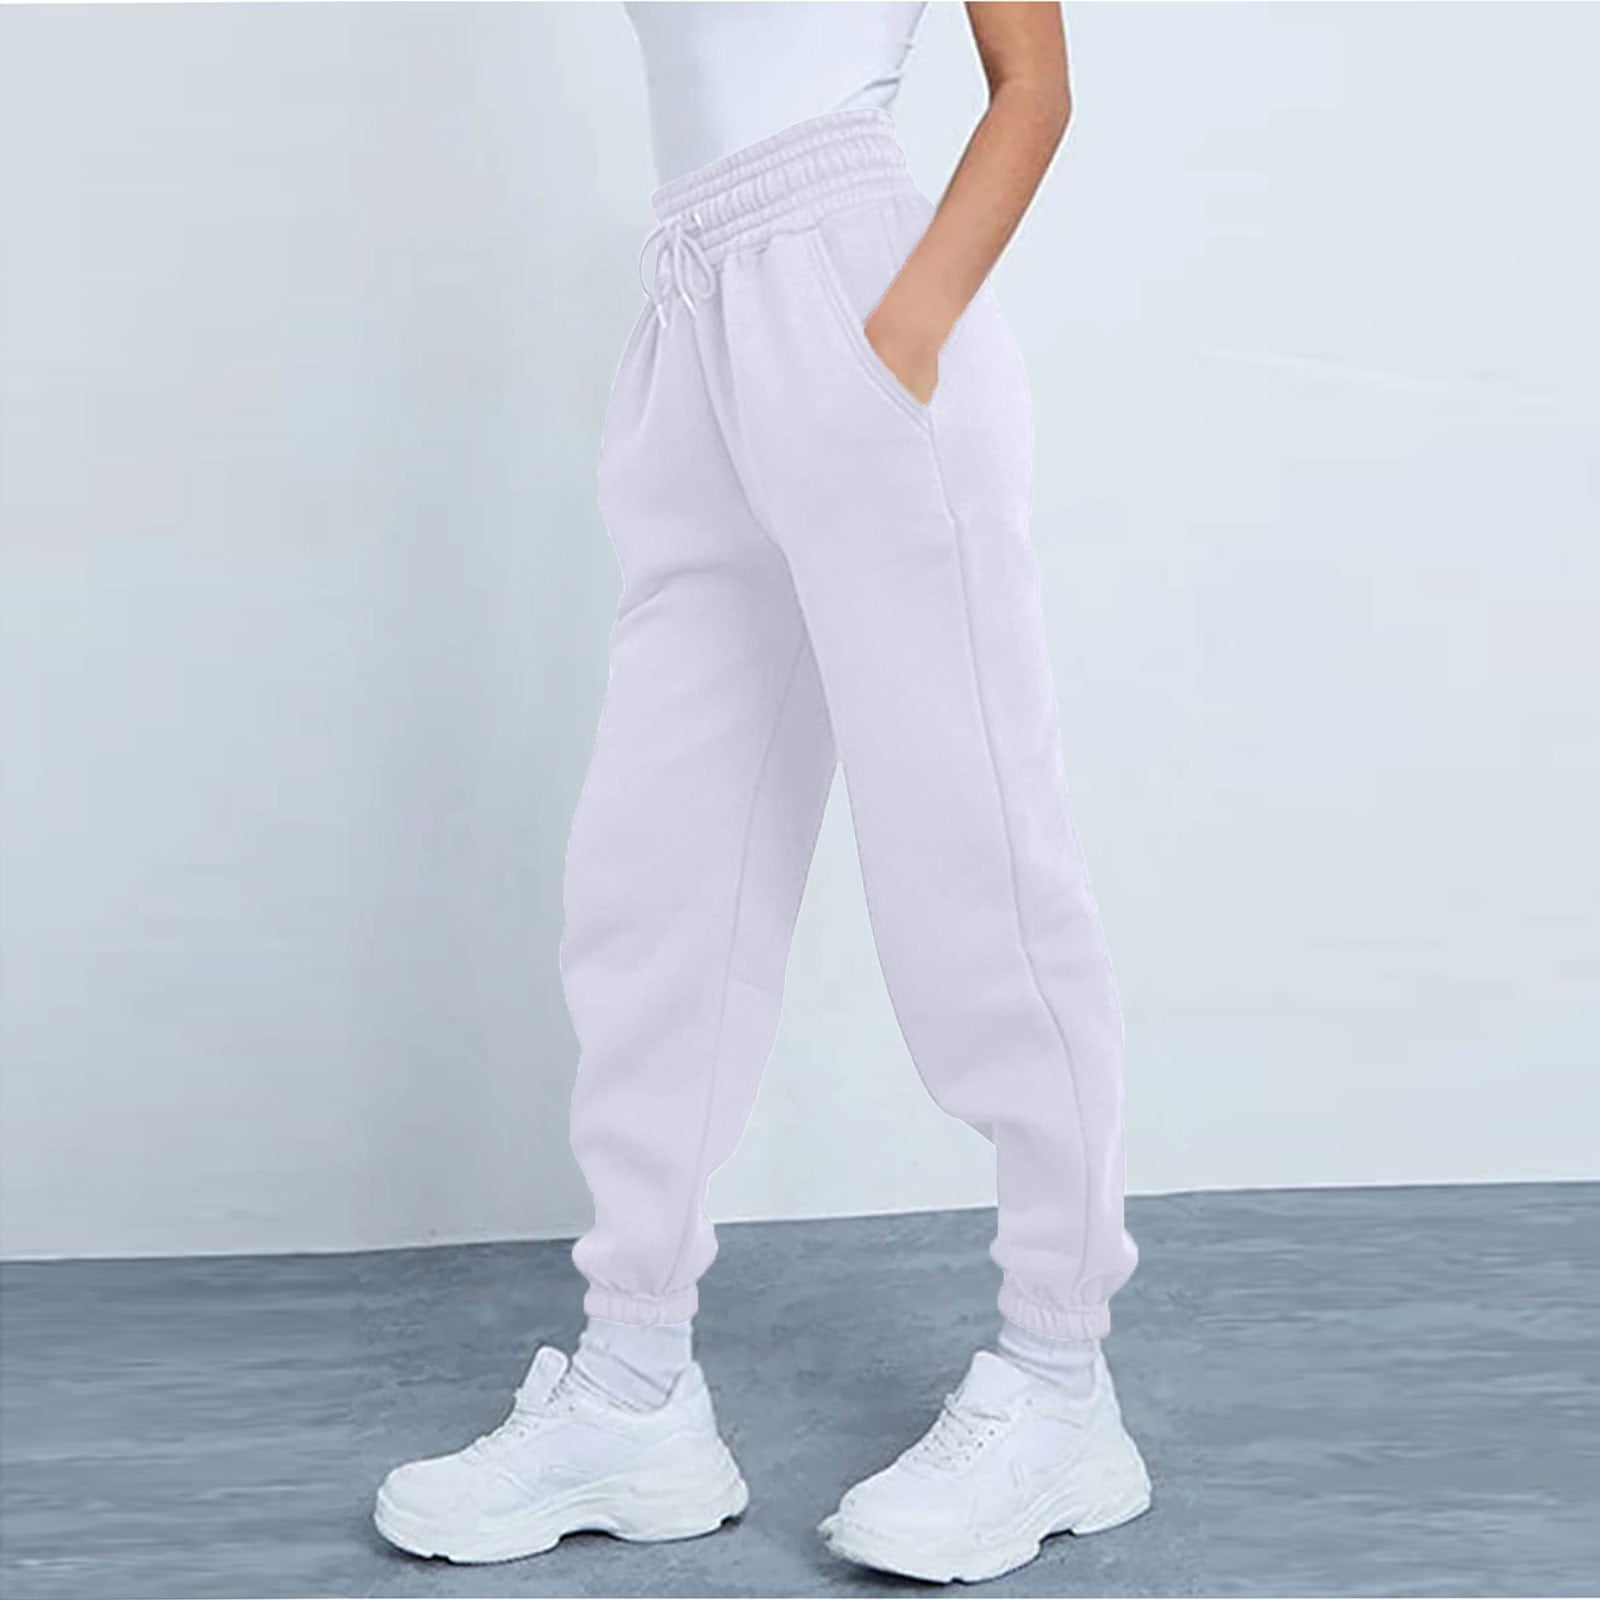 ELFINDEA Lounge Pants Women Fashion Sport Solid Color Drawstring Pocket  Casual Sweatpants Pants Light Blue XL